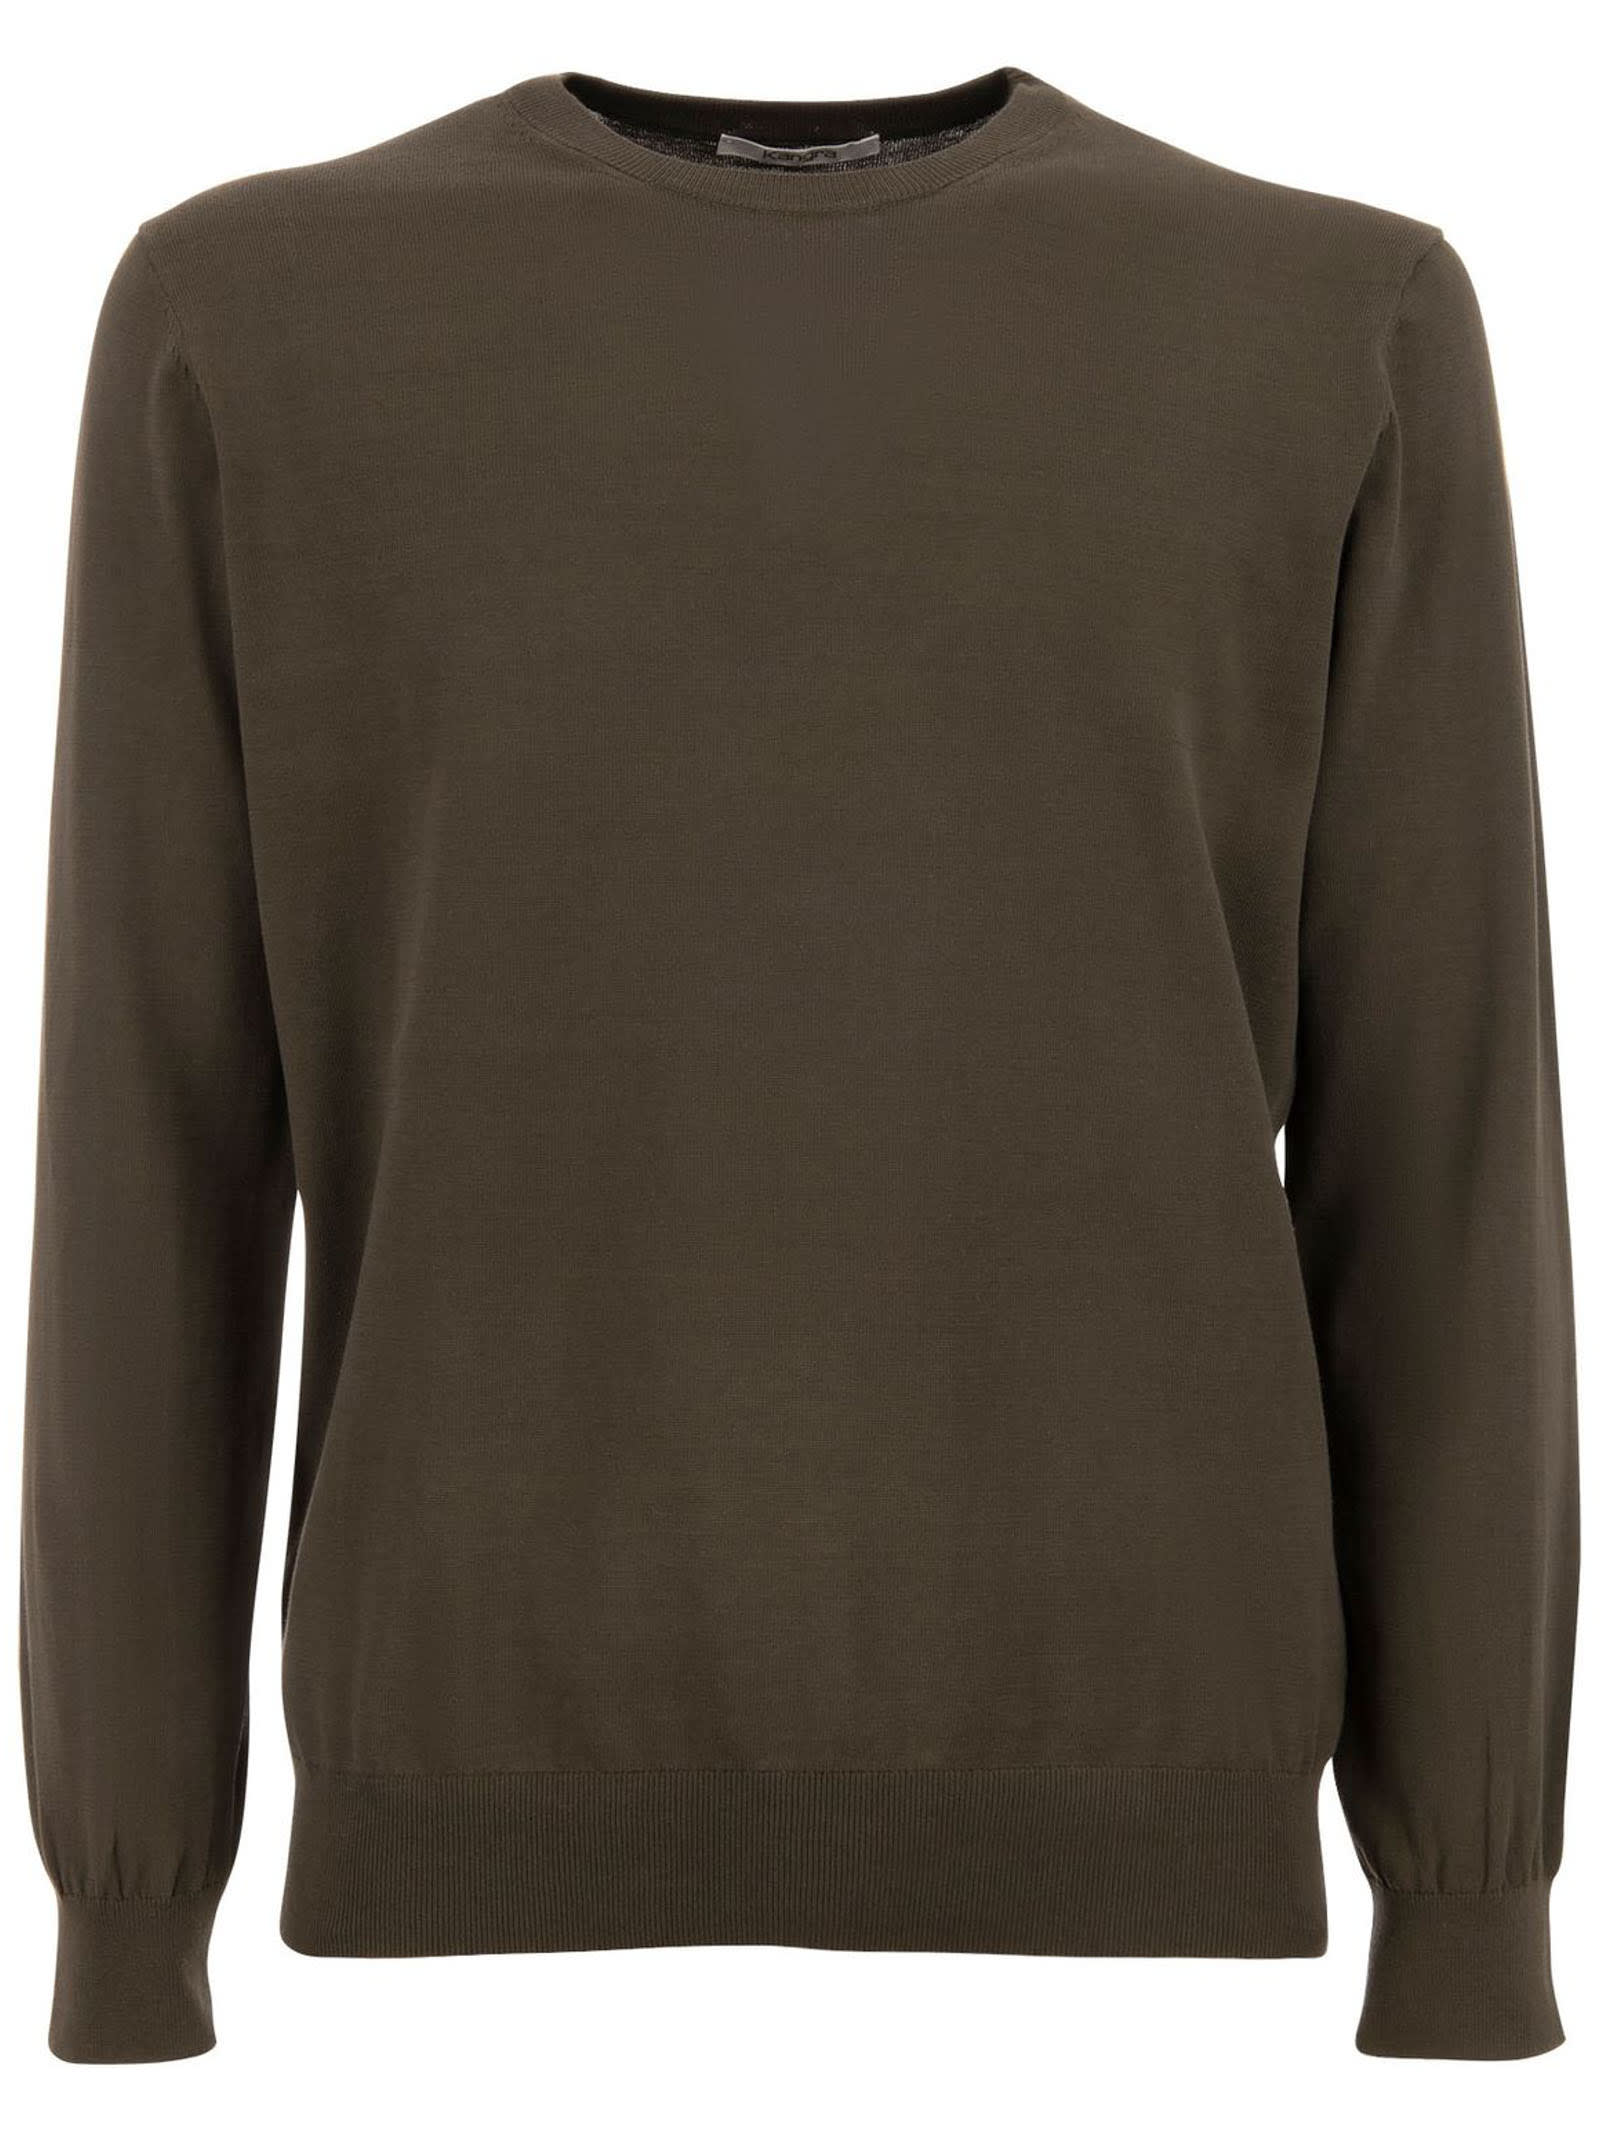 Shop Kangra Brown Cotton Ribbed Sweater